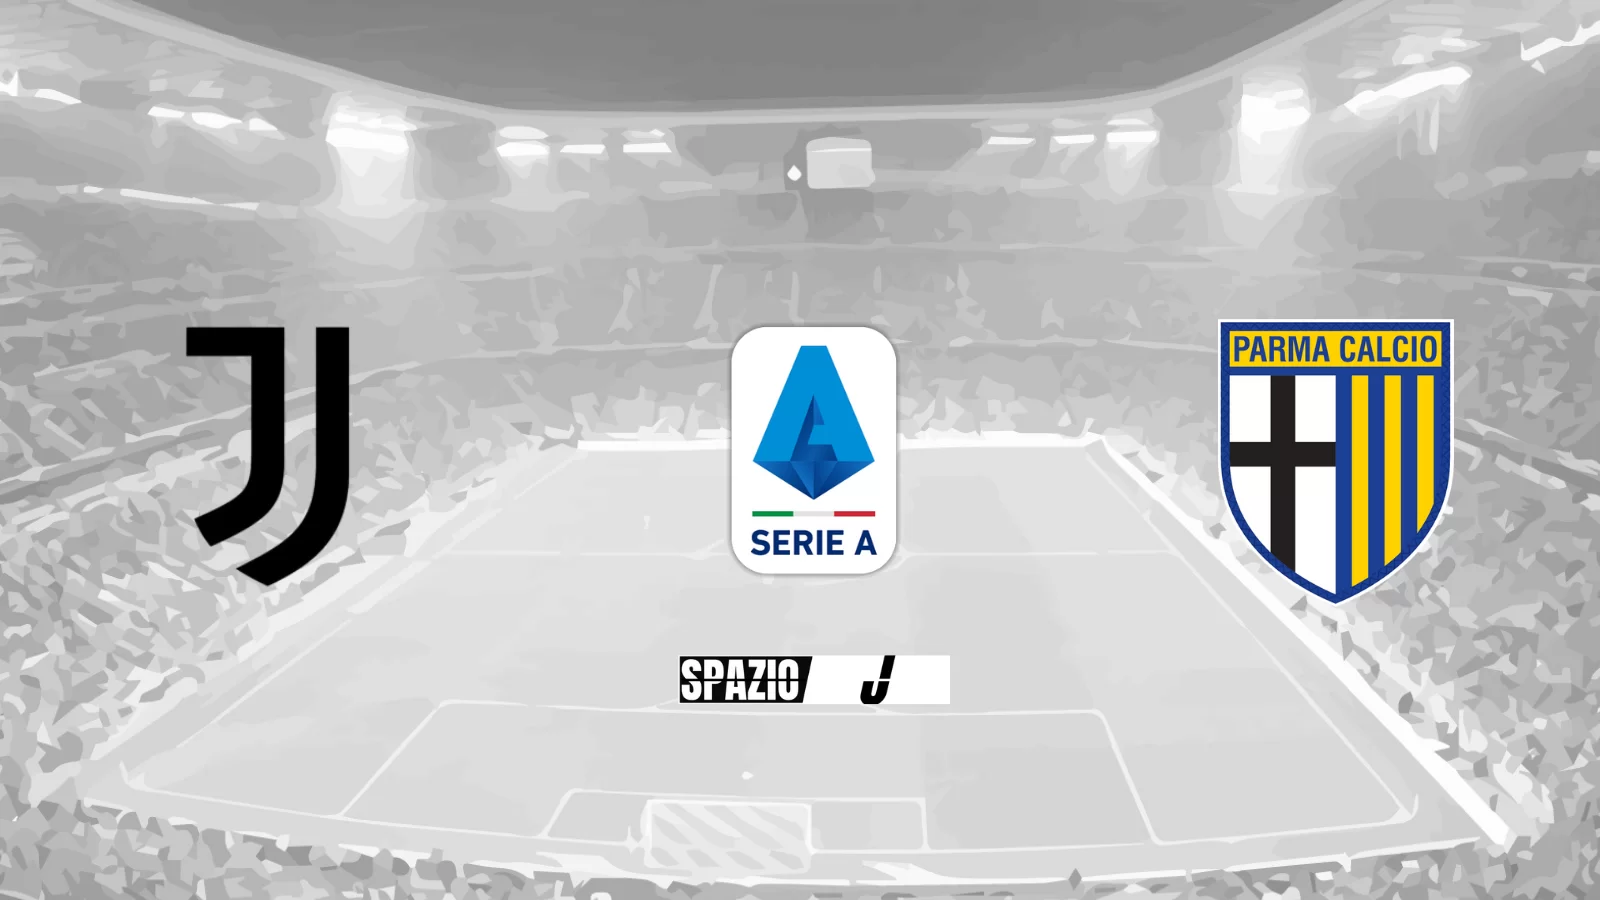 Finale all’Allianz Stadium, la Juve stende il Parma per 3-1